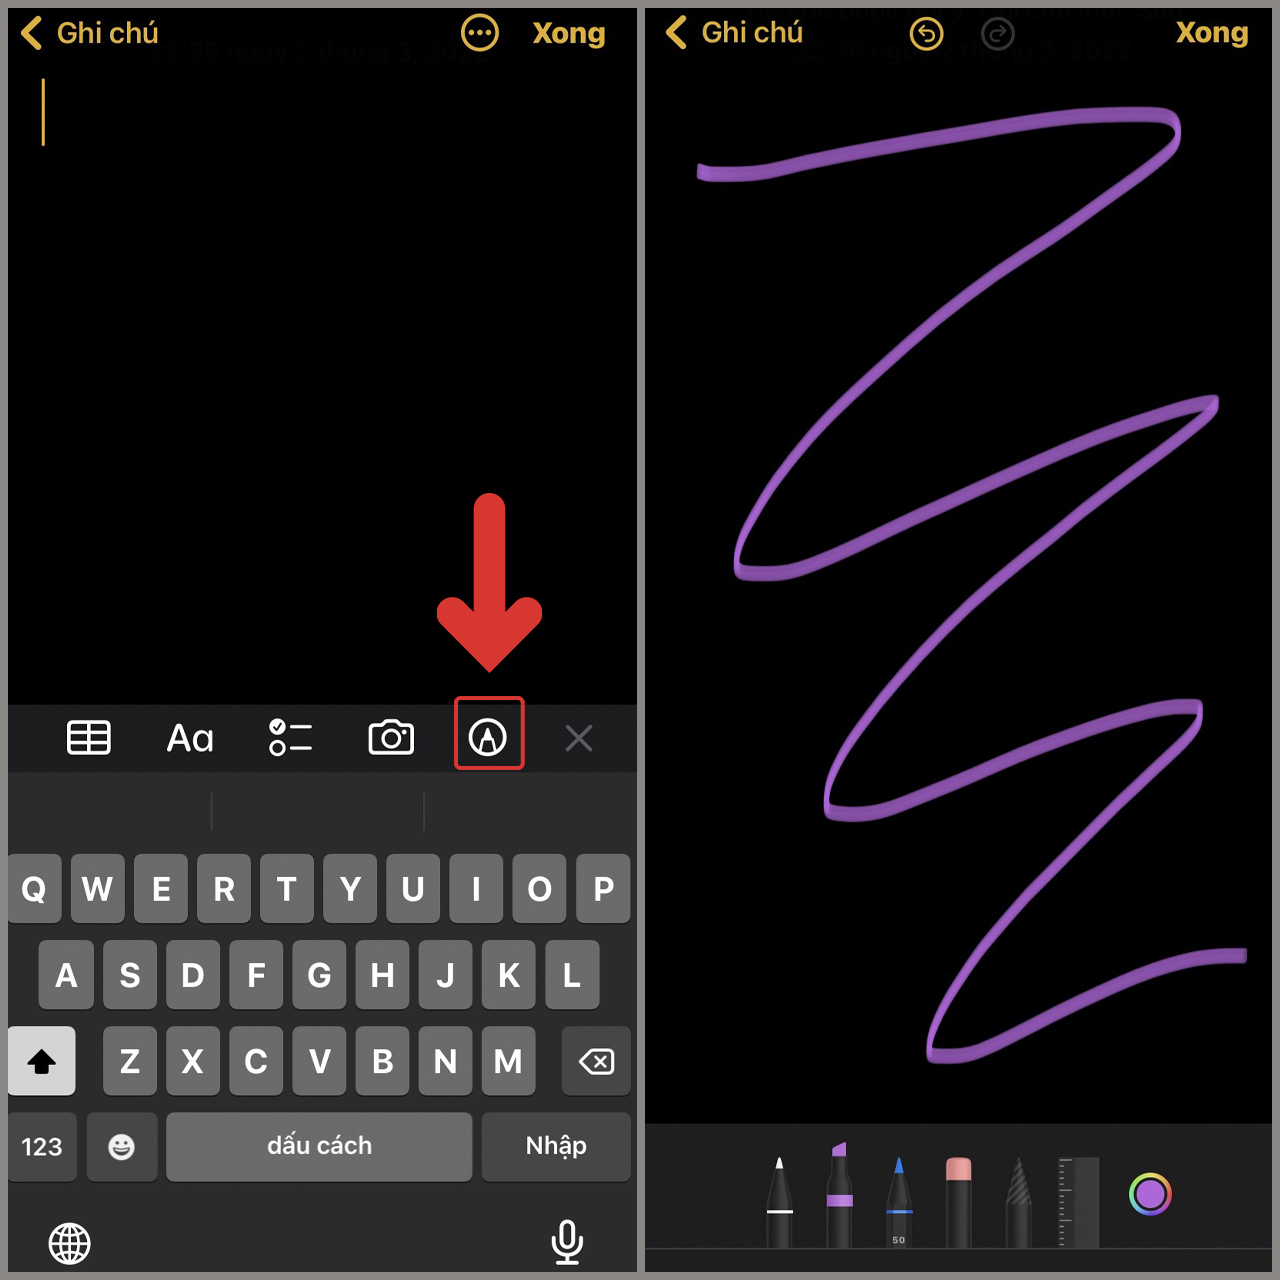 Test màn hình iPhone sẽ giúp bạn xác định chất lượng màn hình của điện thoại. Nếu bạn muốn đảm bảo rằng màn hình của iPhone của mình hoạt động tốt và hiển thị màu sắc chính xác, hãy xem video kiểm tra này. Bạn sẽ biết được làm thế nào để kiểm tra màn hình iPhone của mình và sửa lỗi nếu cần.